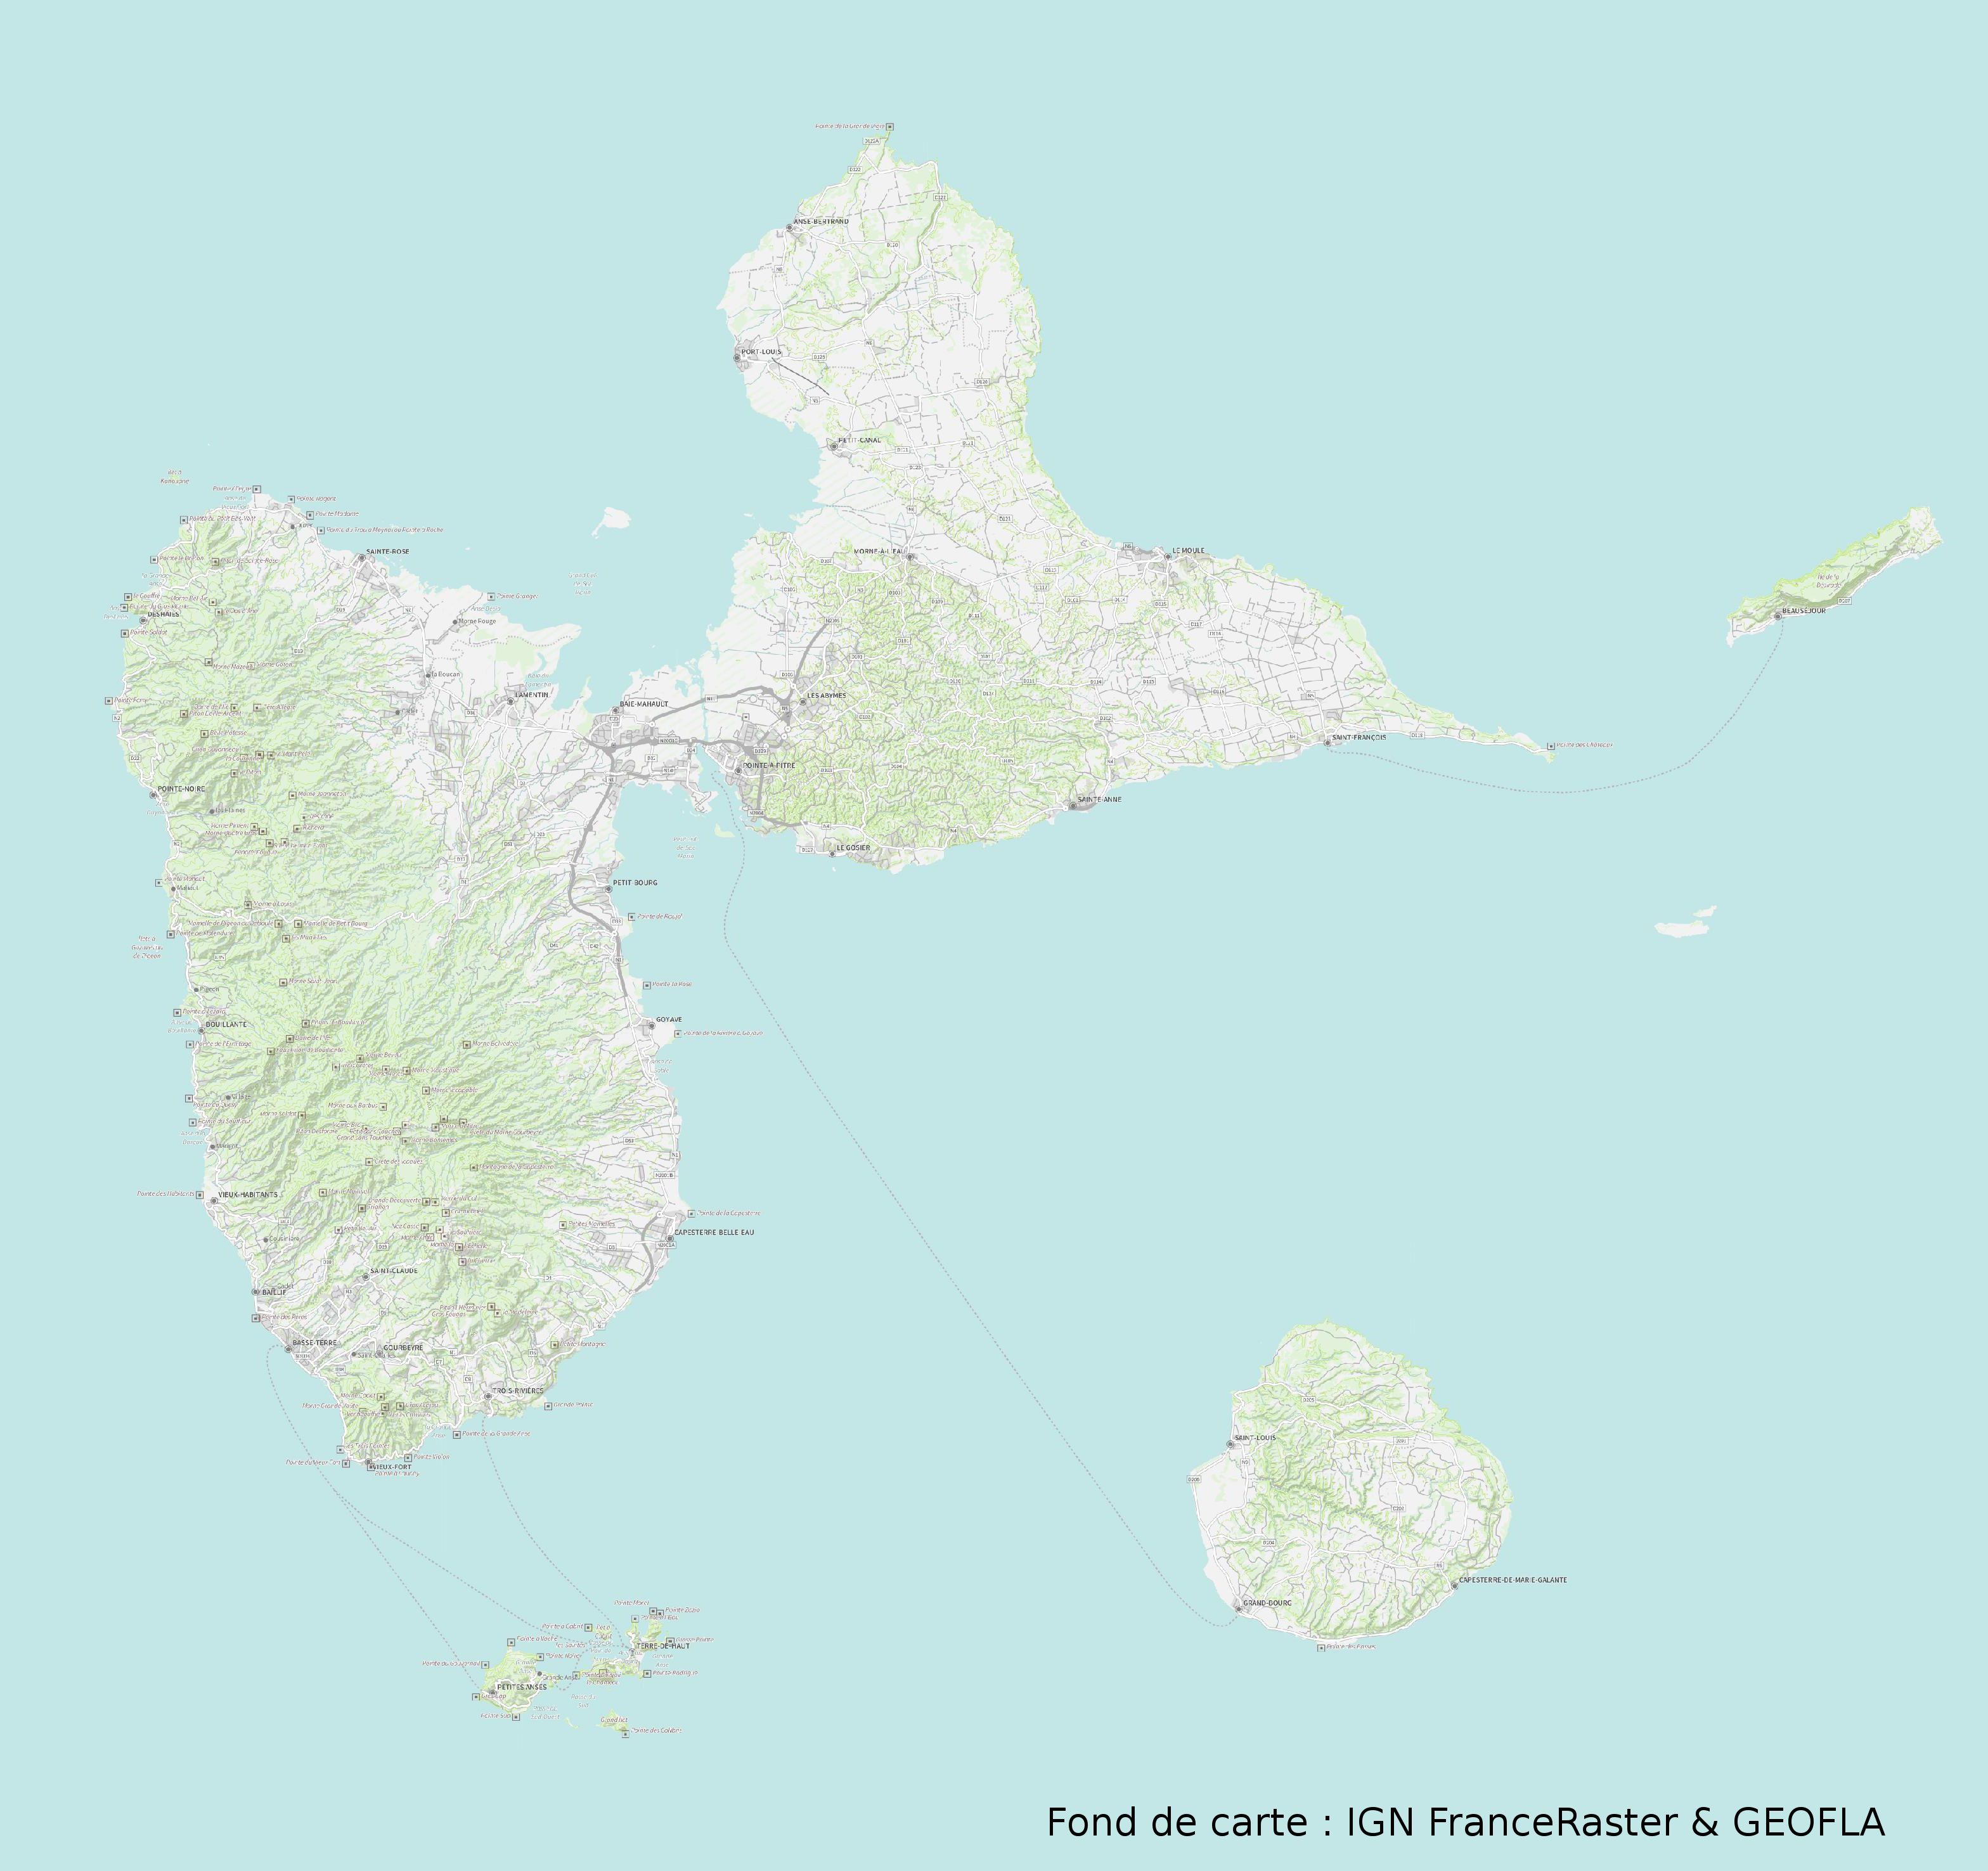 Carte De La Guadeloupe Carte Du Département Et De La Région